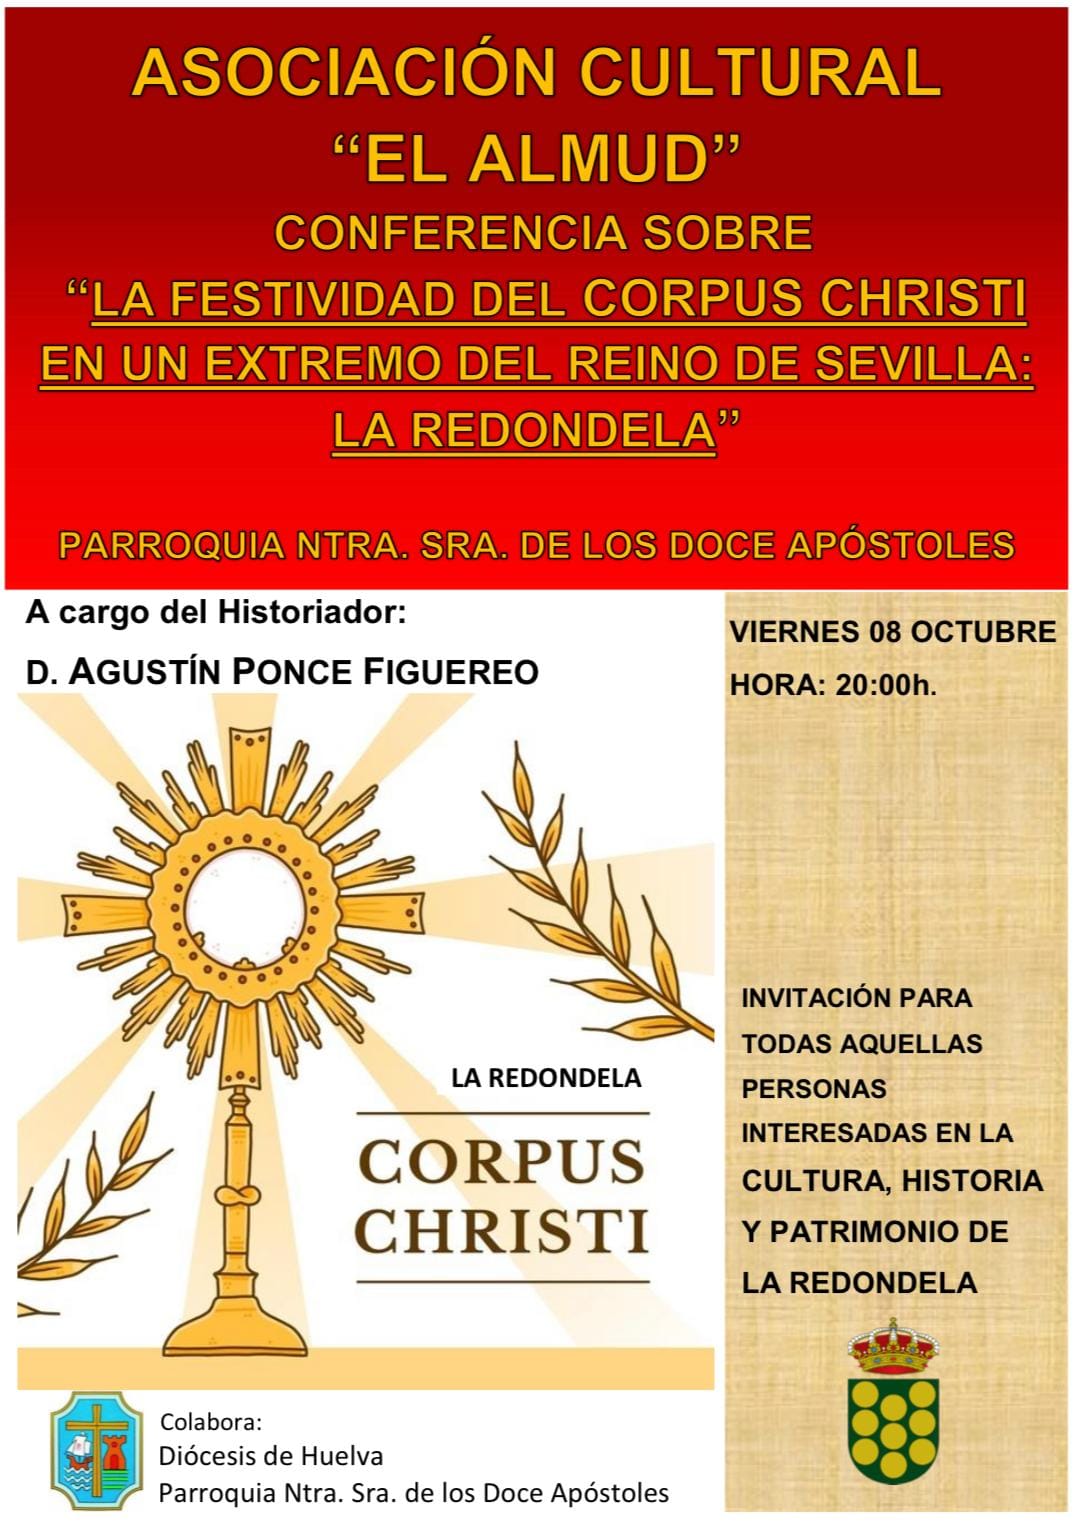 Conferencia sobre La Festividad del Corpus Christi en un extremo del Reino de Sevilla: La Redondela